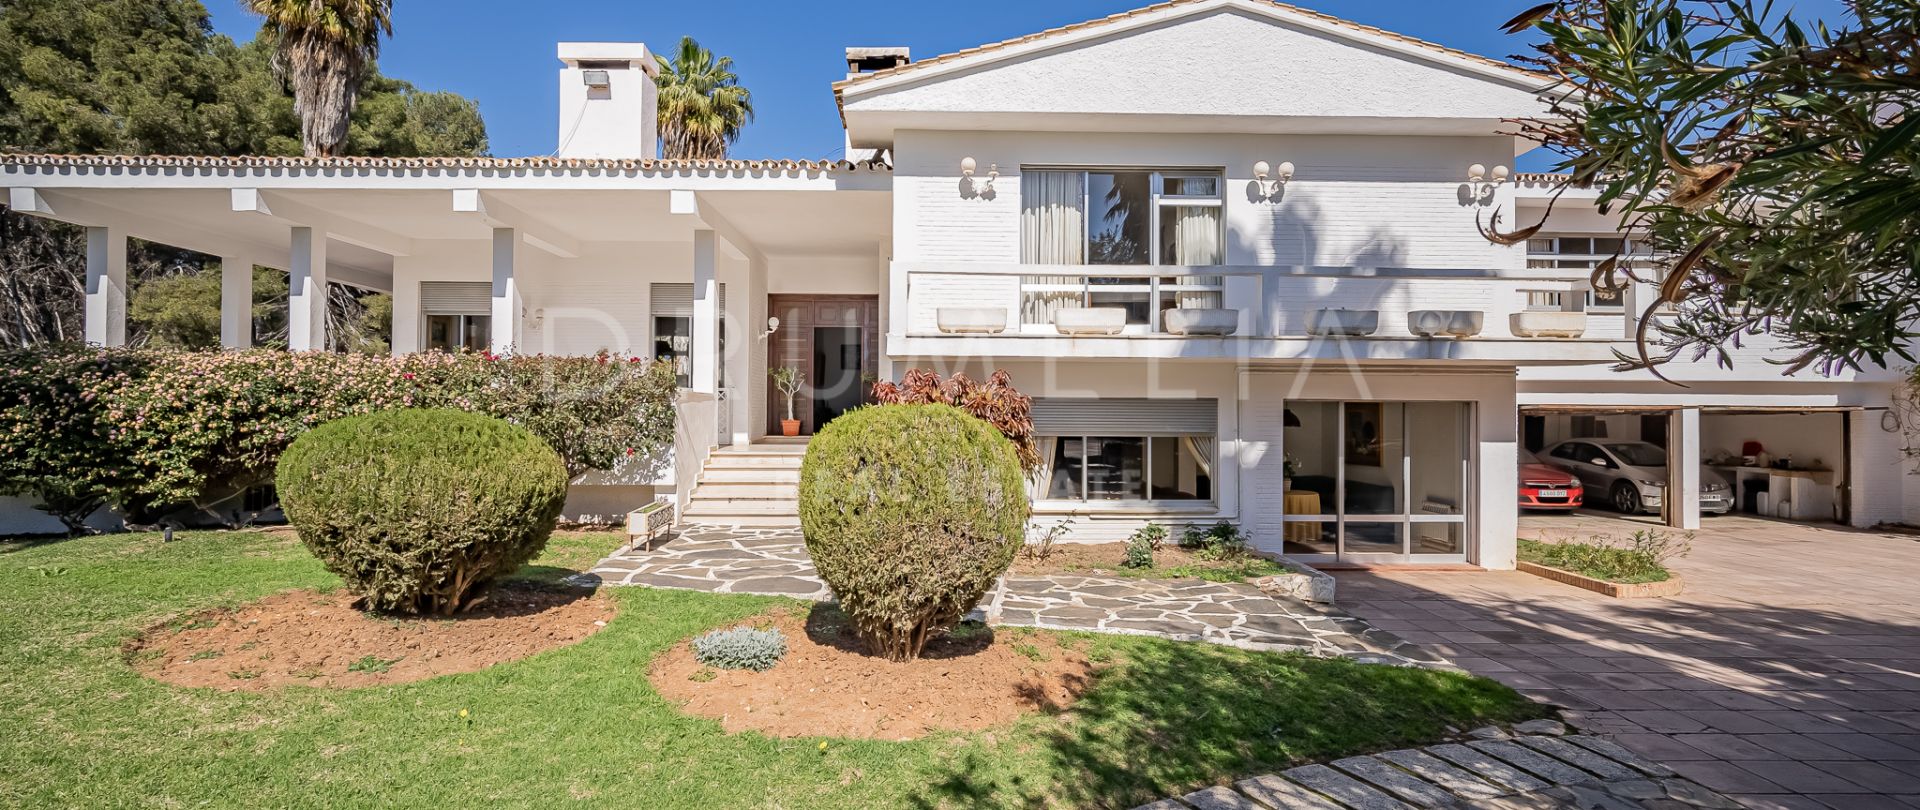 Magnifique maison méditerranéenne de luxe avec vue spectaculaire sur la mer, El Mirador, Marbella